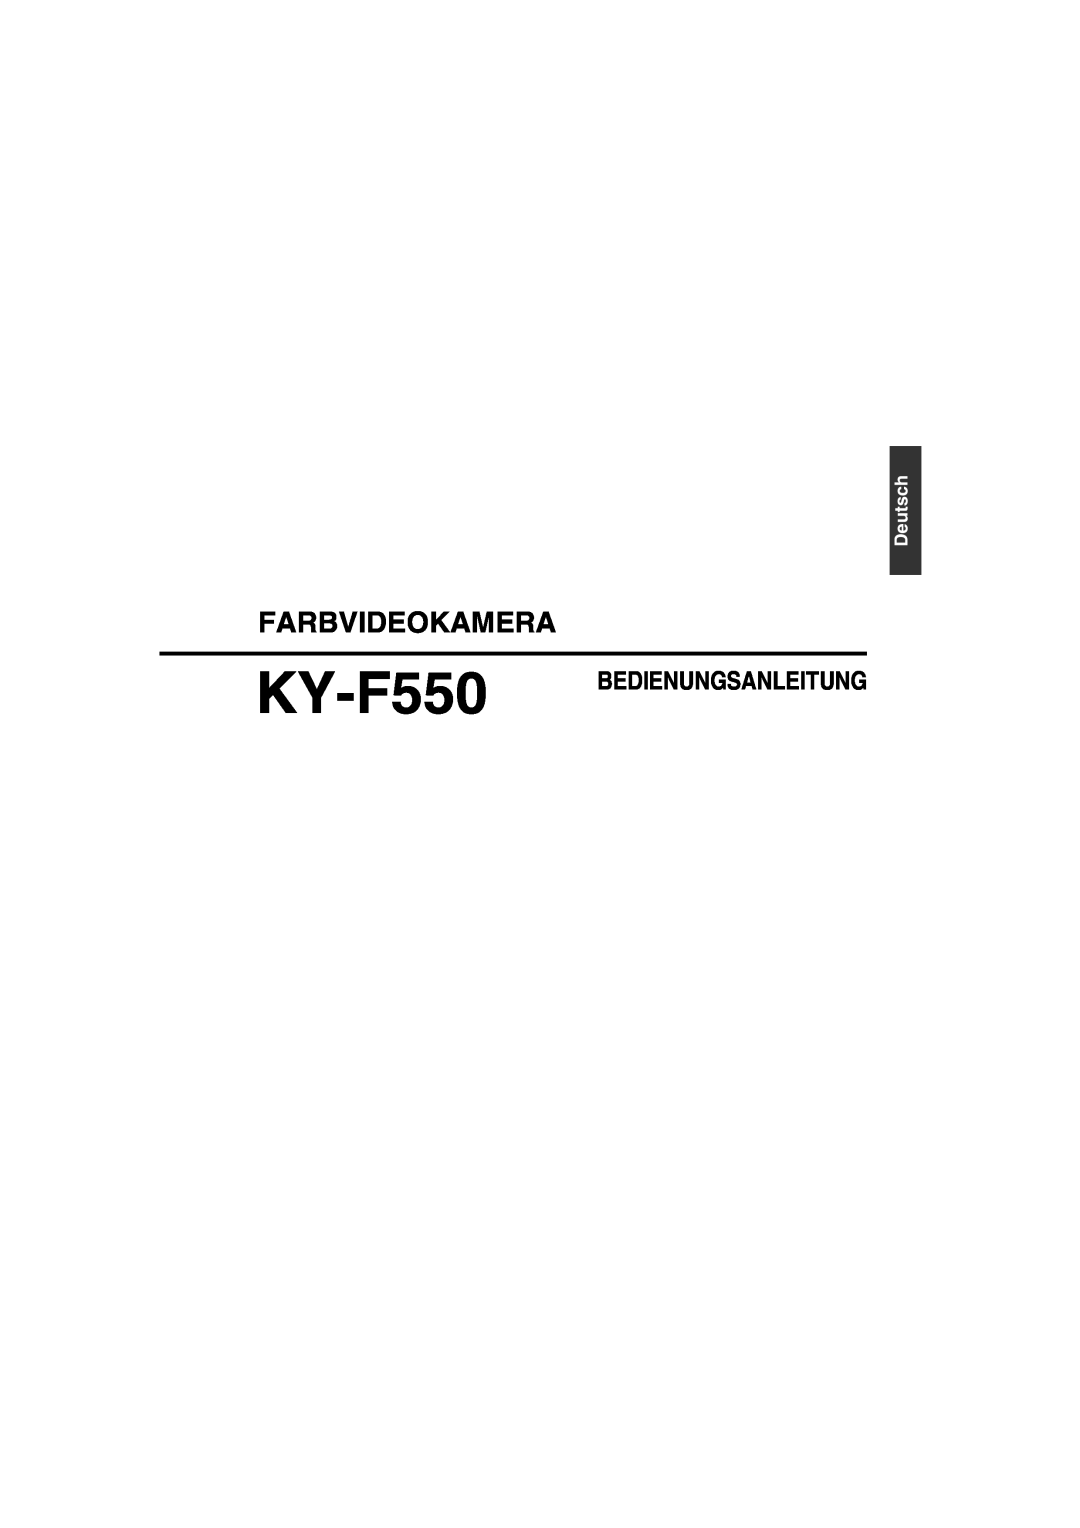 JVC KY-F550E instruction manual Farbvideokamera, KY-F550 BEDIENUNGSANLEITUNG, Deutsch 